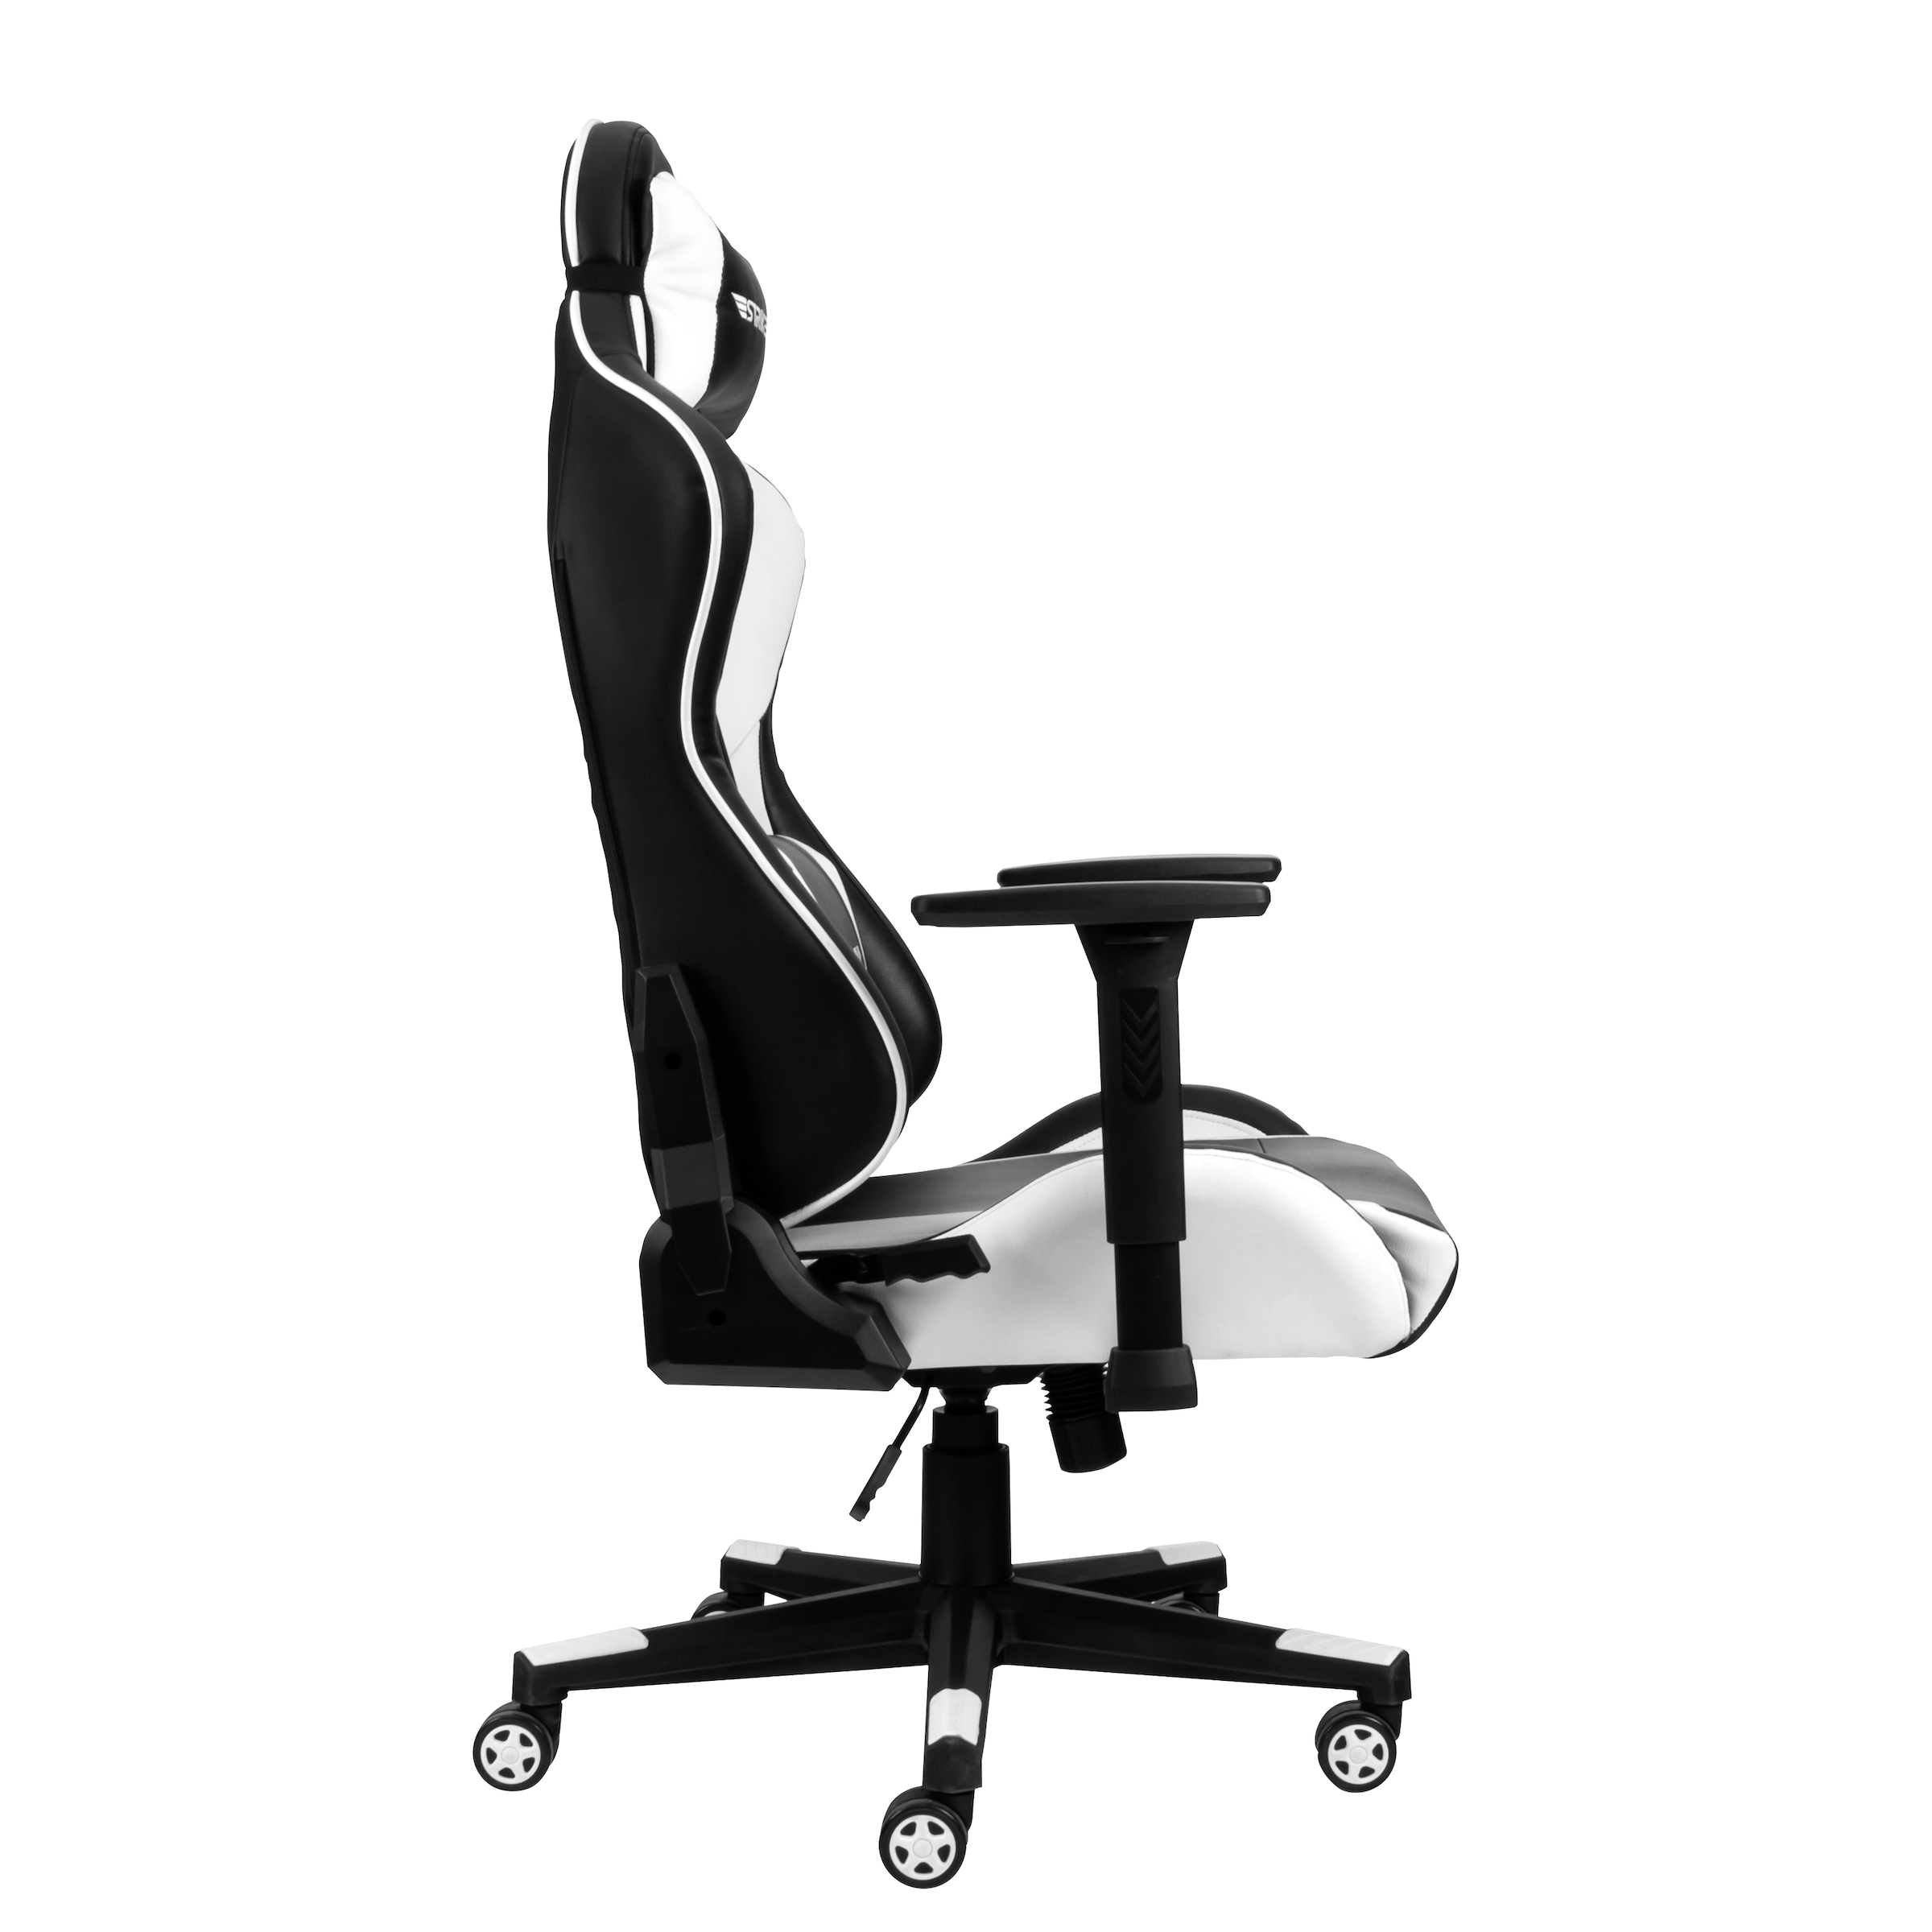 Hyrican Gaming-Stuhl »"Striker Tank" schwarz/weiss, Kunstleder, ergonomischer Gamingstuhl«, Bürostuhl, Schreibtischstuhl, geeignet für Erwachsene